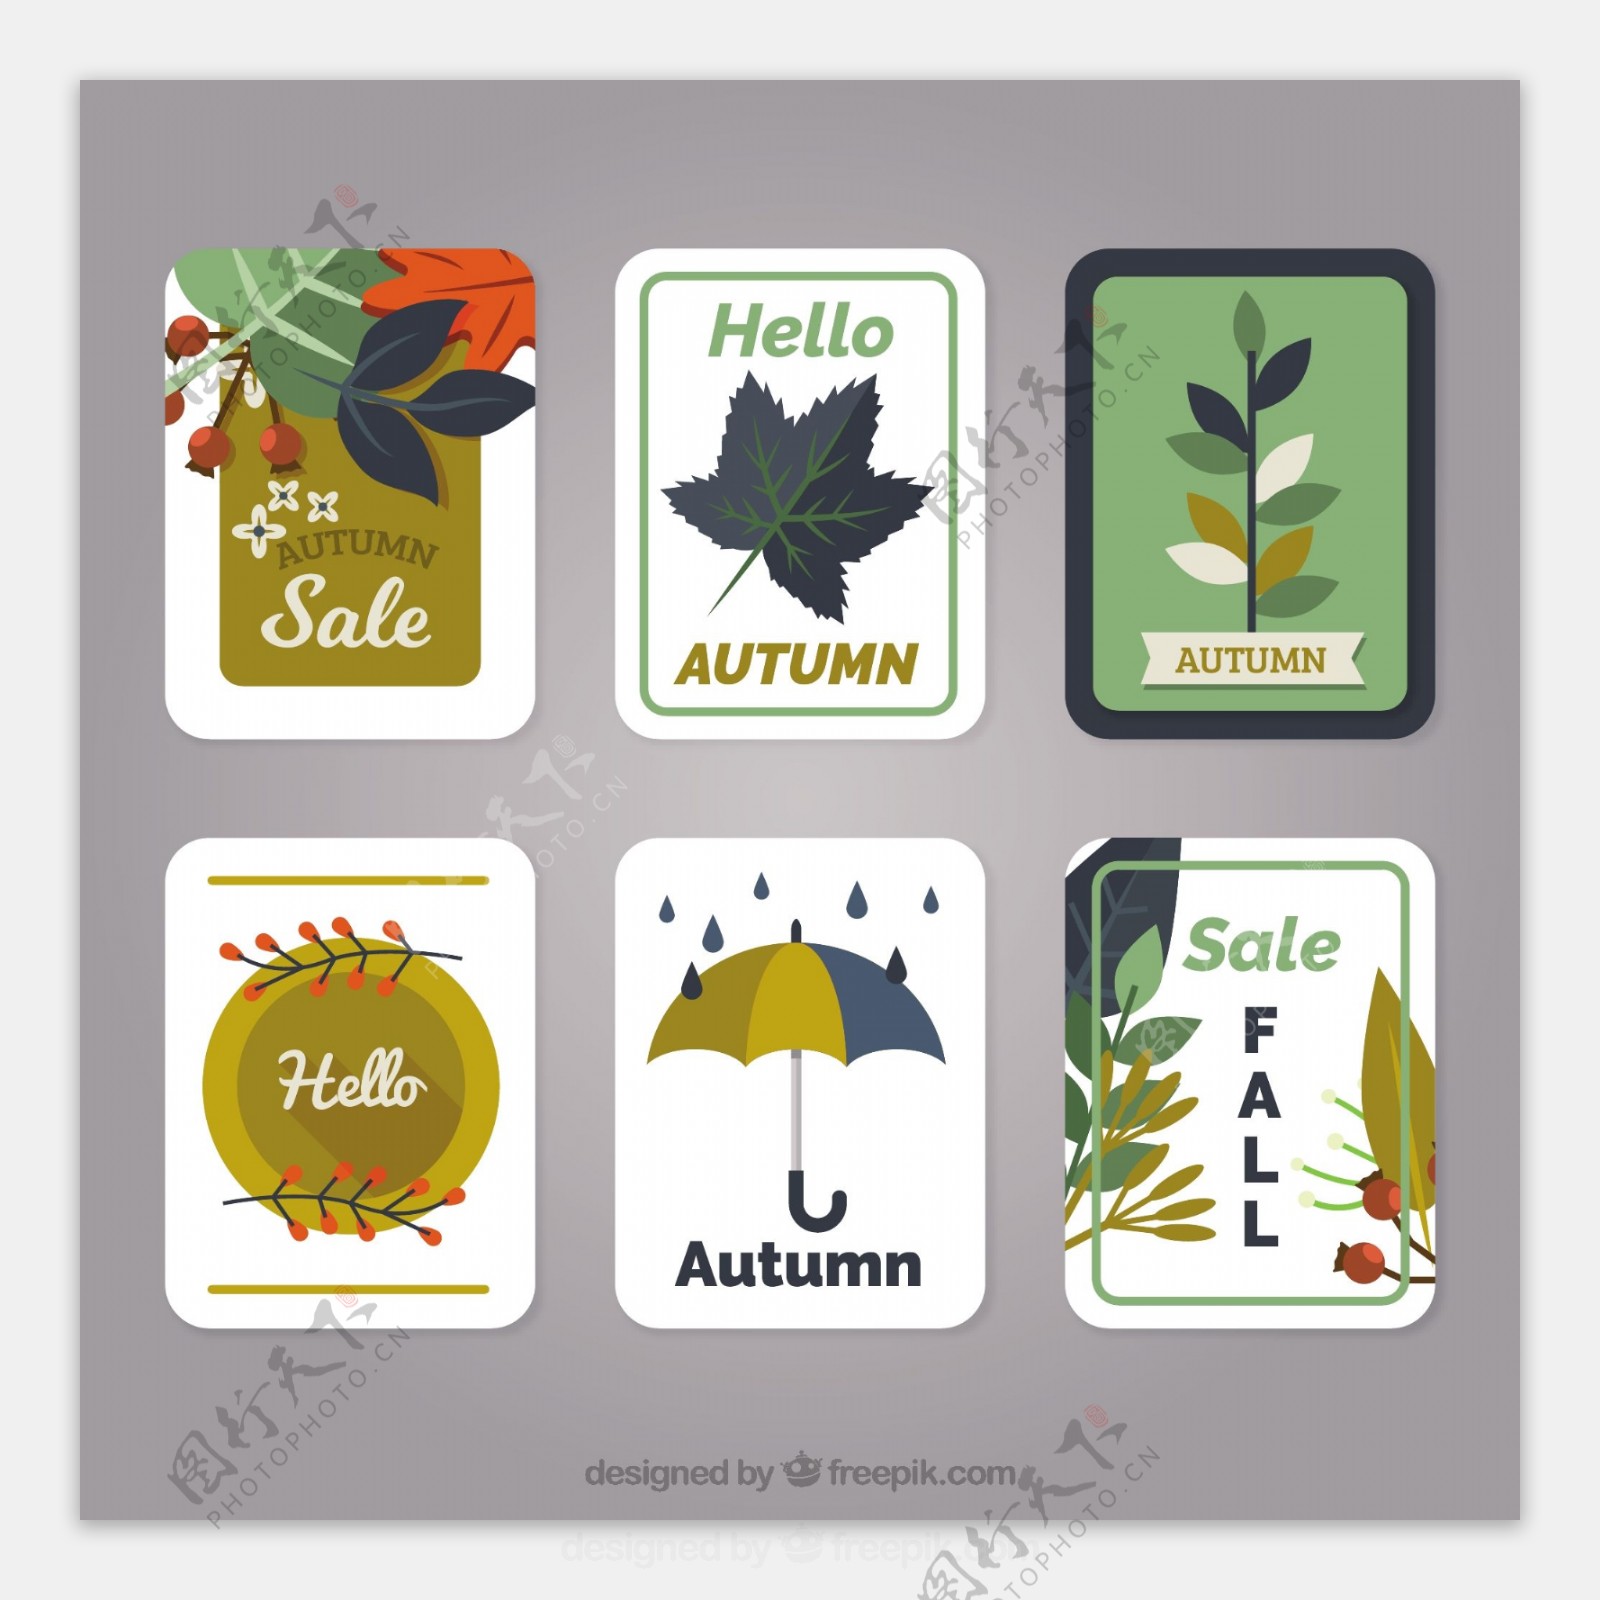 经典秋季卡片包装与平面设计